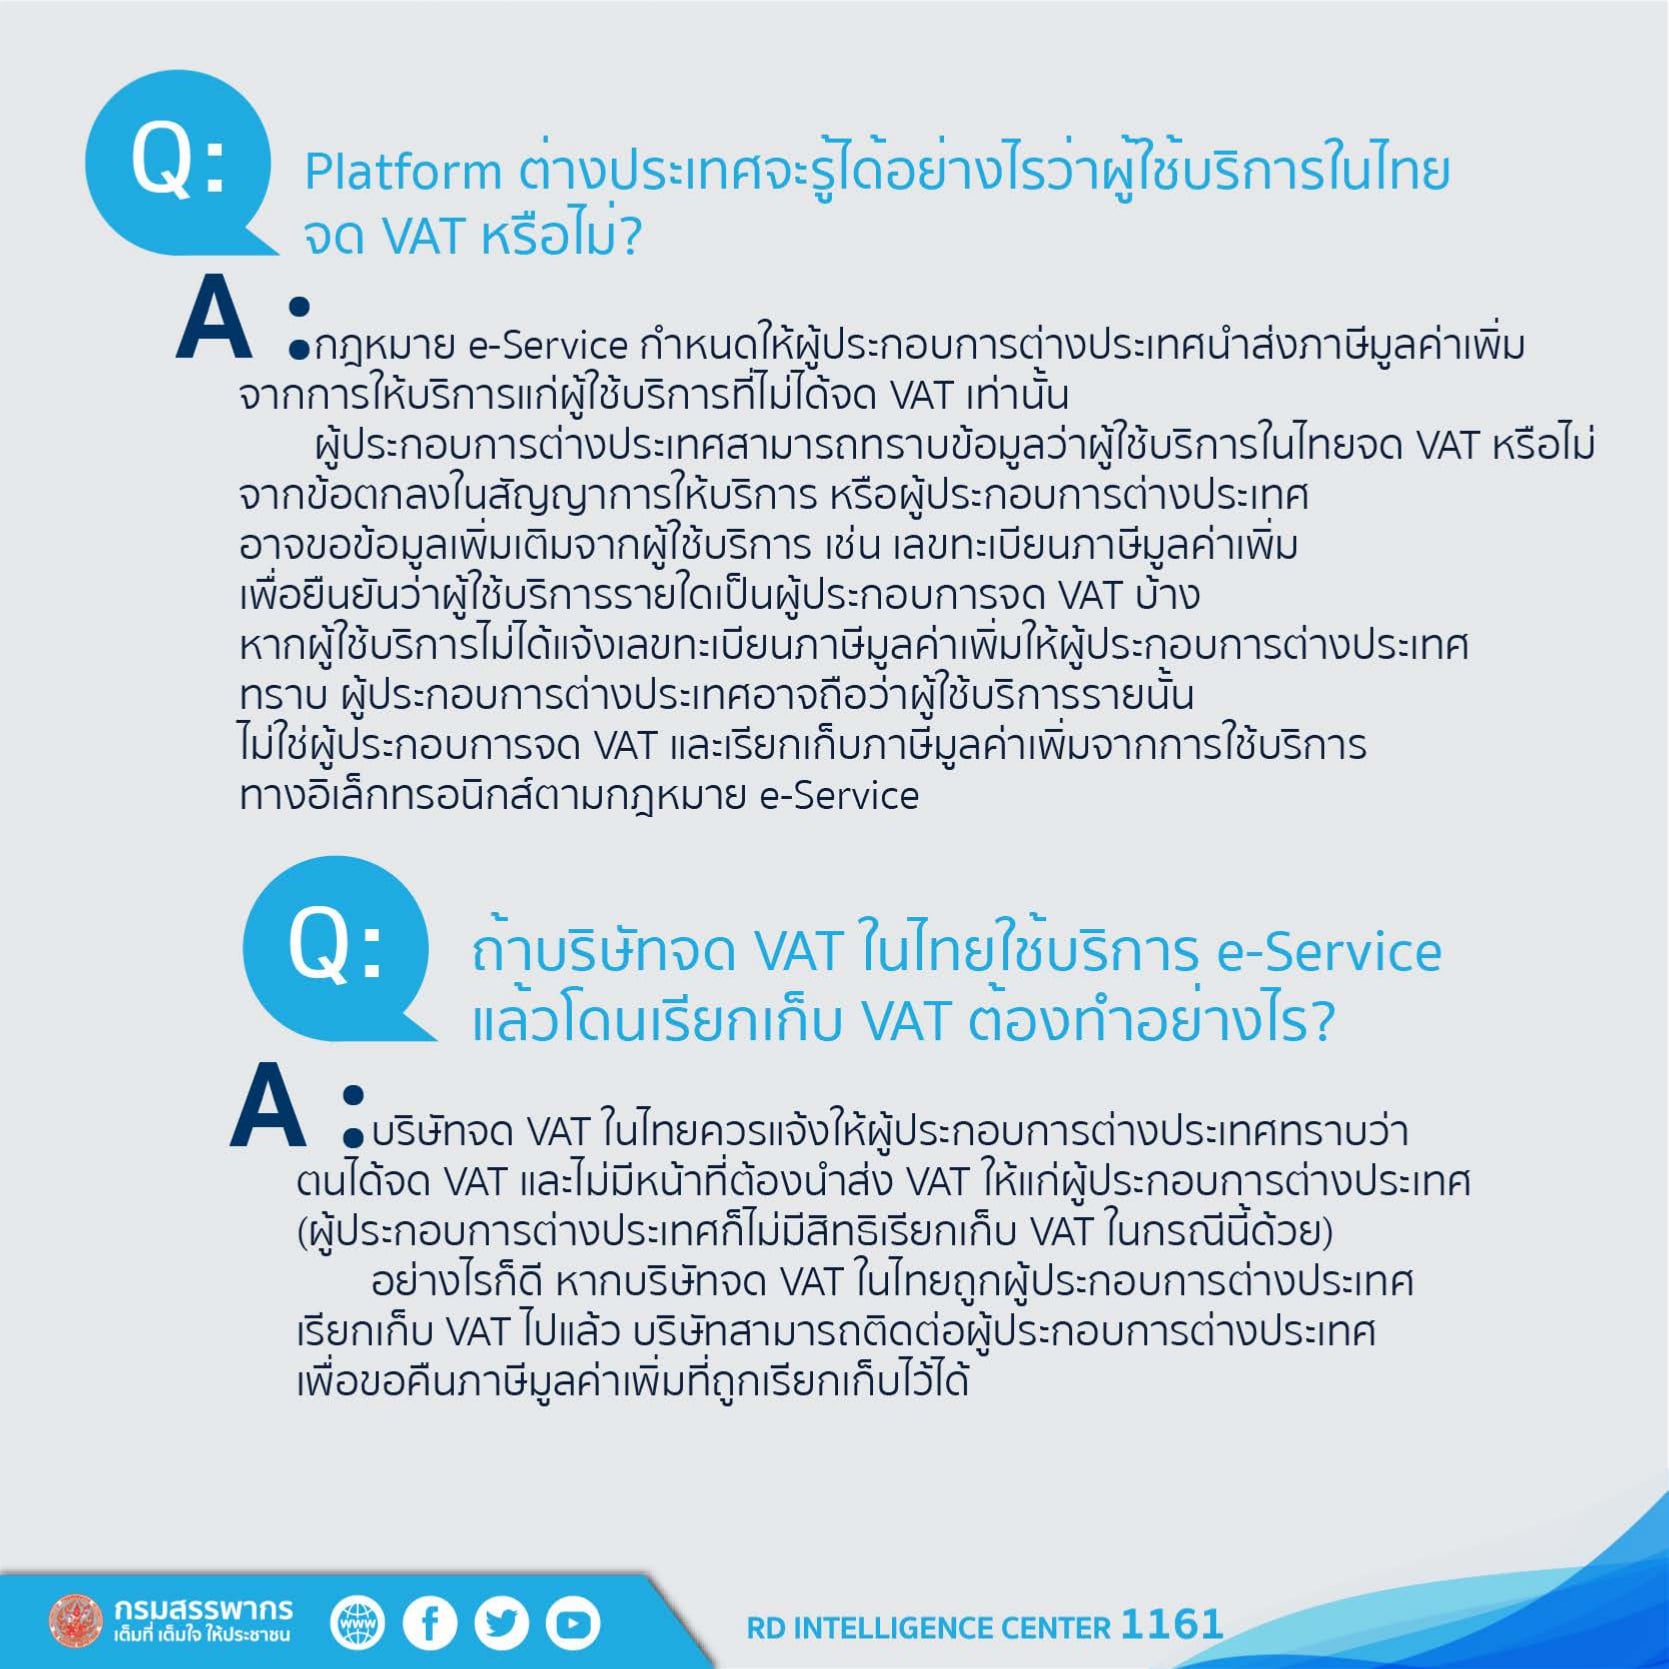 แพลตฟอร์มต่างประเทศจะรู้ได้อย่างไรว่าผู้ใช้บริการในไทยจดvatหรือไม่